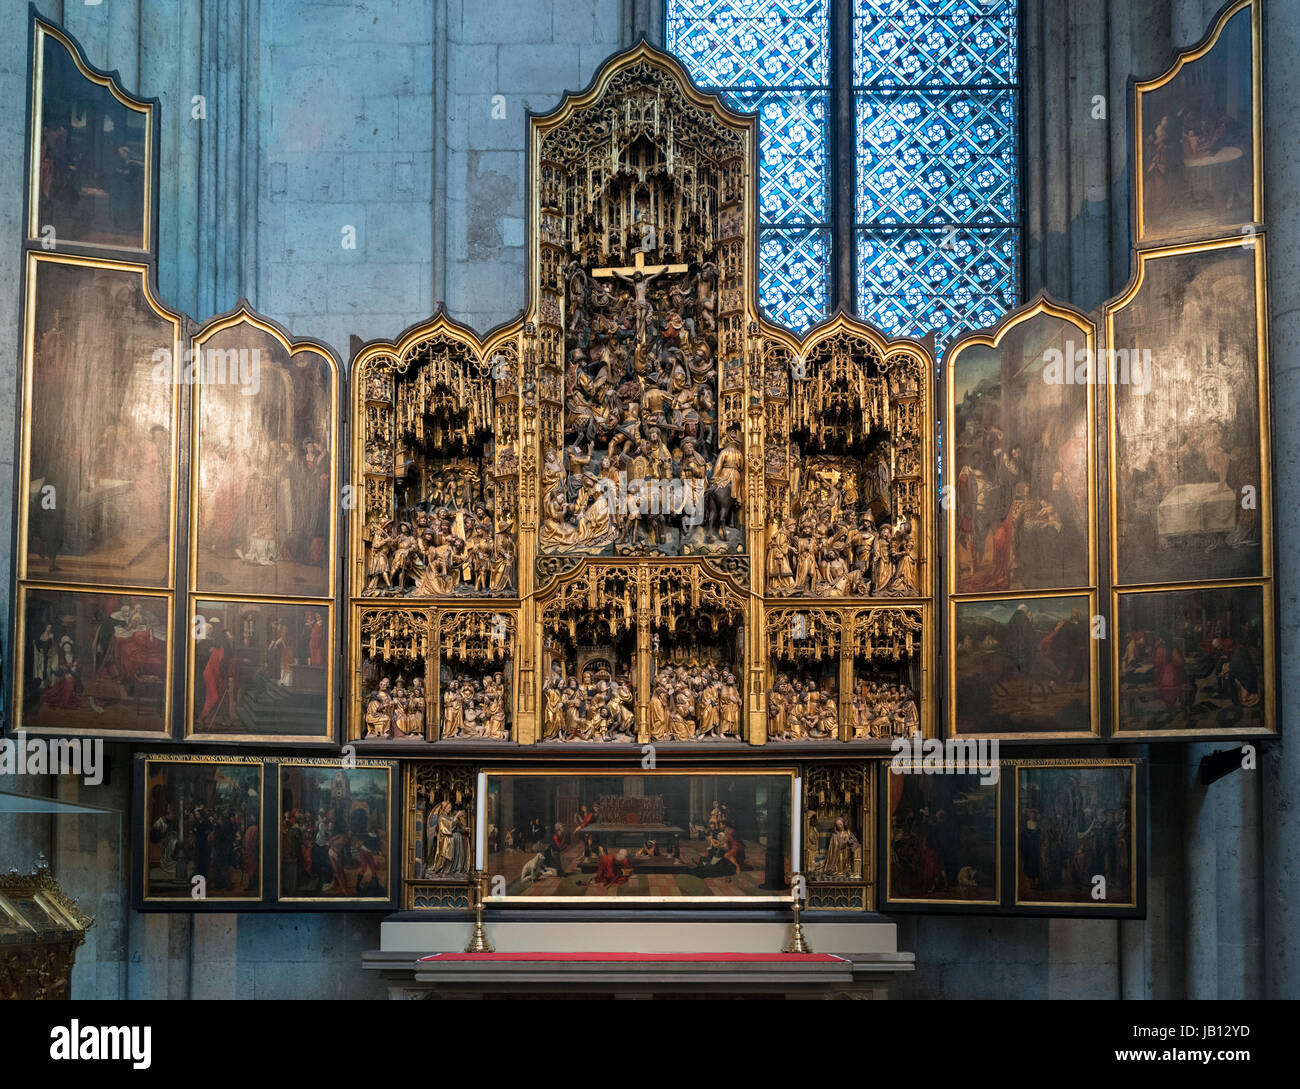 Das Altarbild St. Agilulfus im Kölner Dom (Kölner Dom), Köln, Deutschland Stockfoto